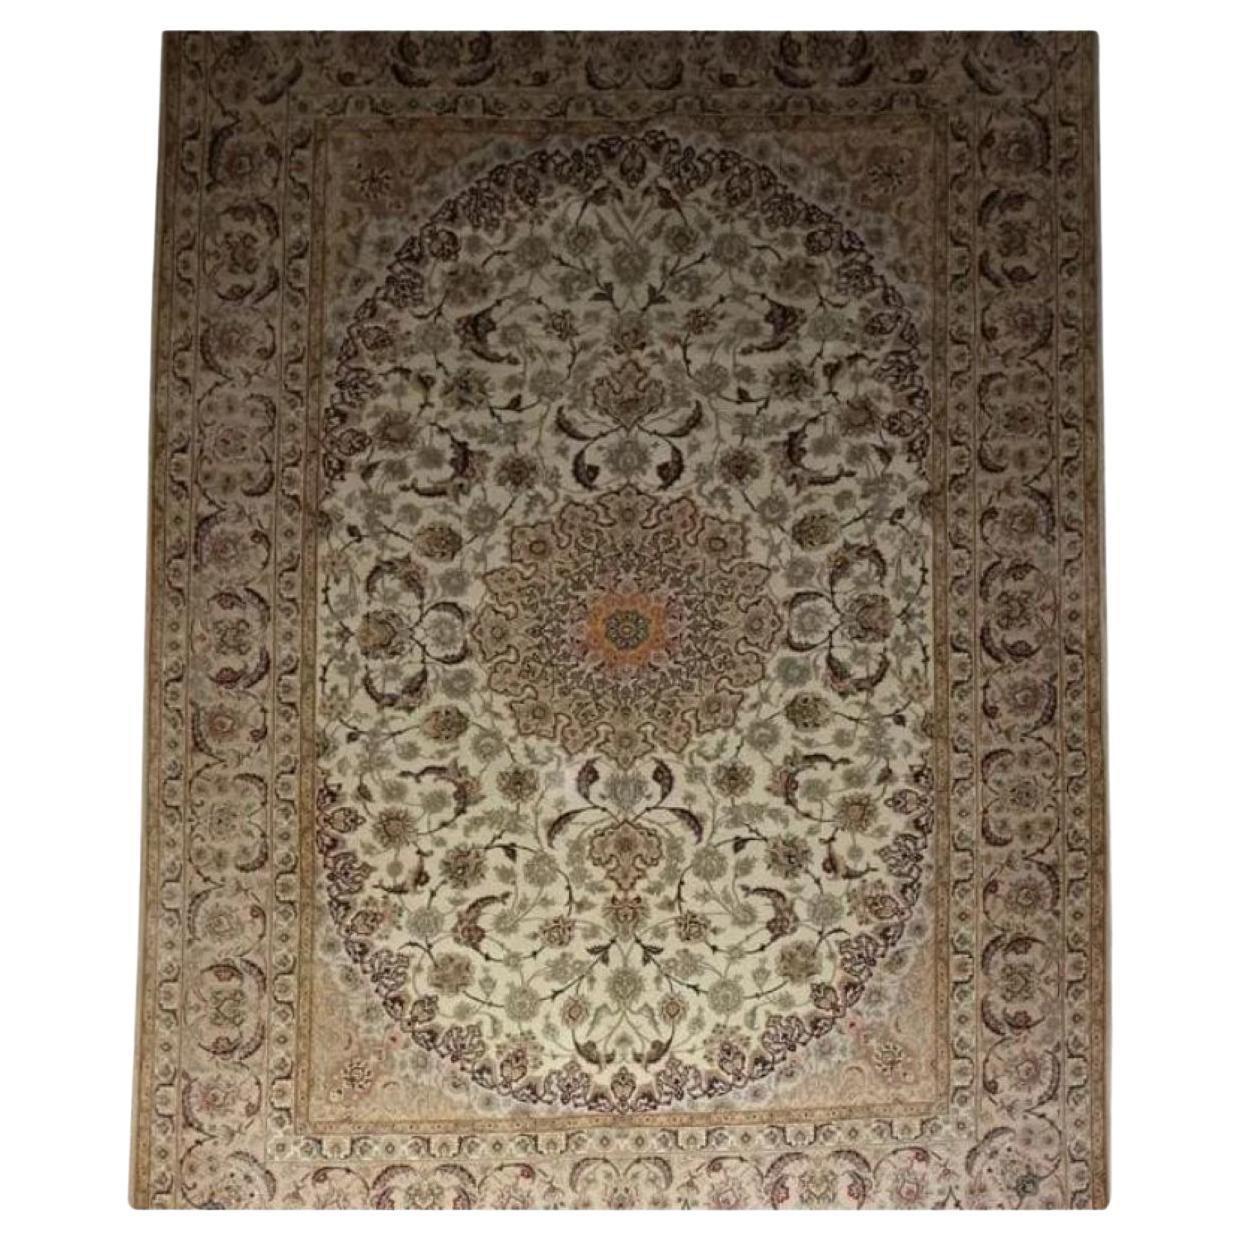 Très beau tapis persan Isfahan en soie et laine - 11.6' x 8.4'